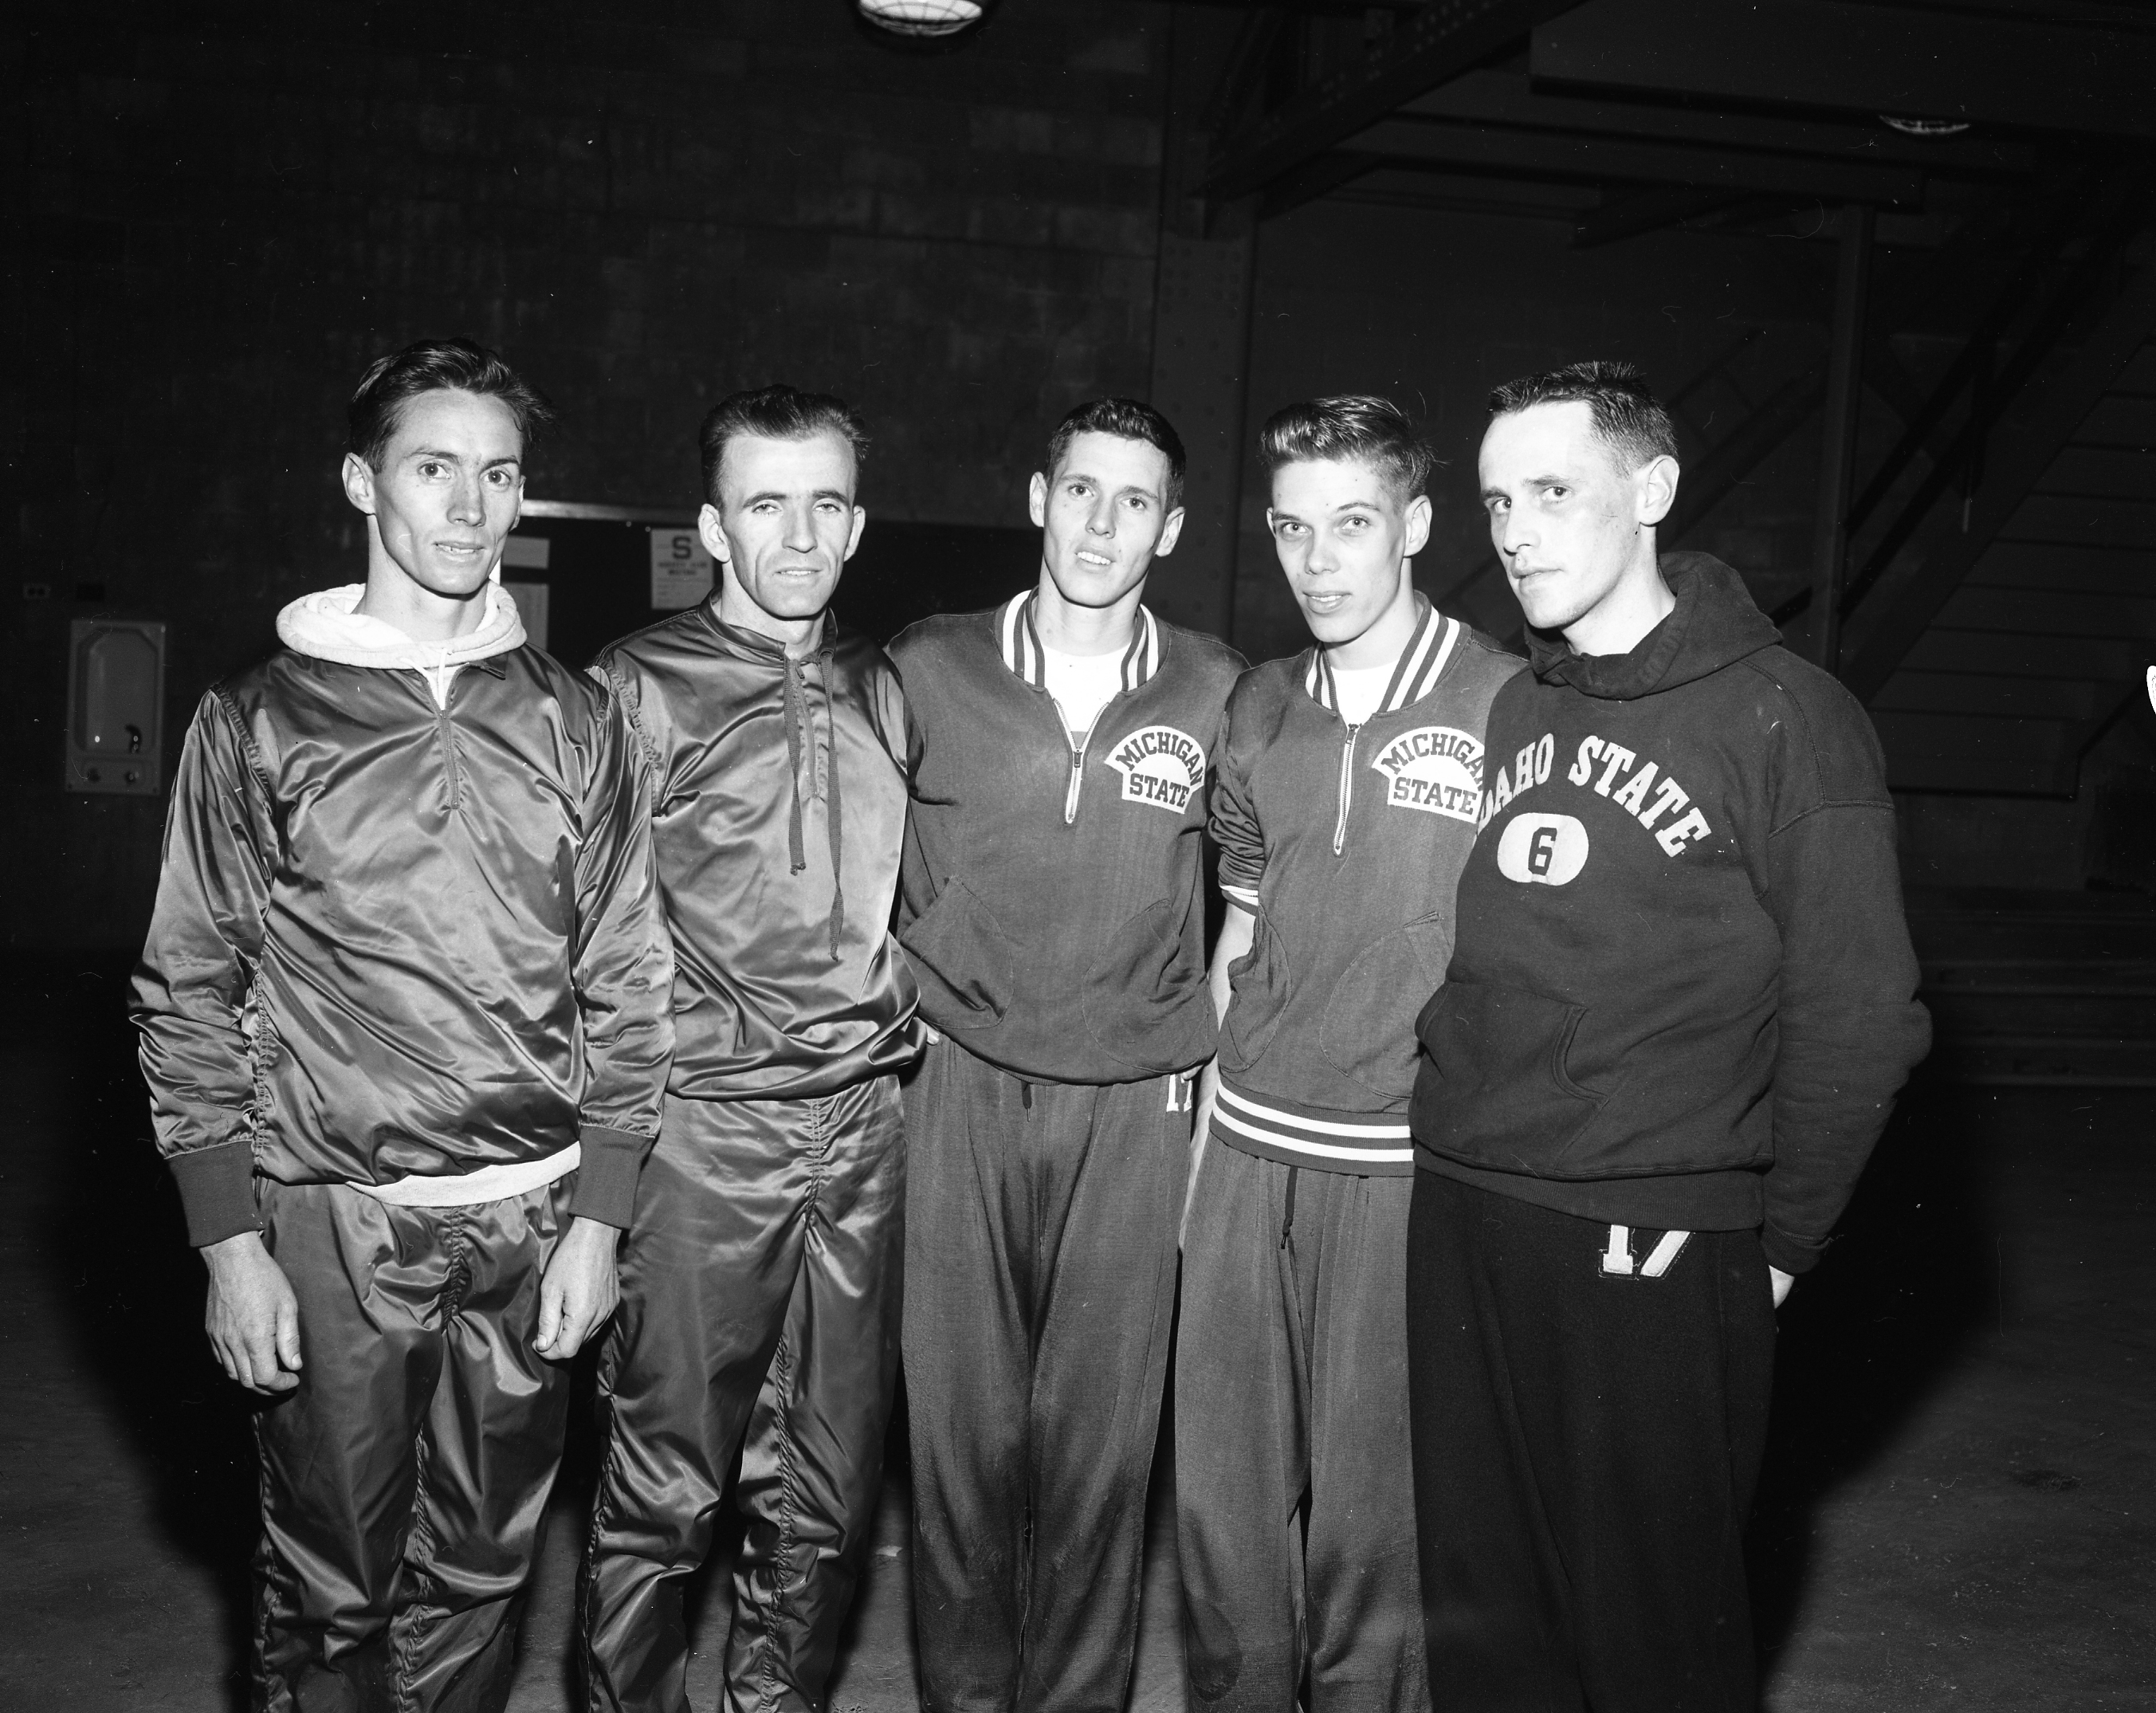 NCAA Cross Country Meet team members, 1959